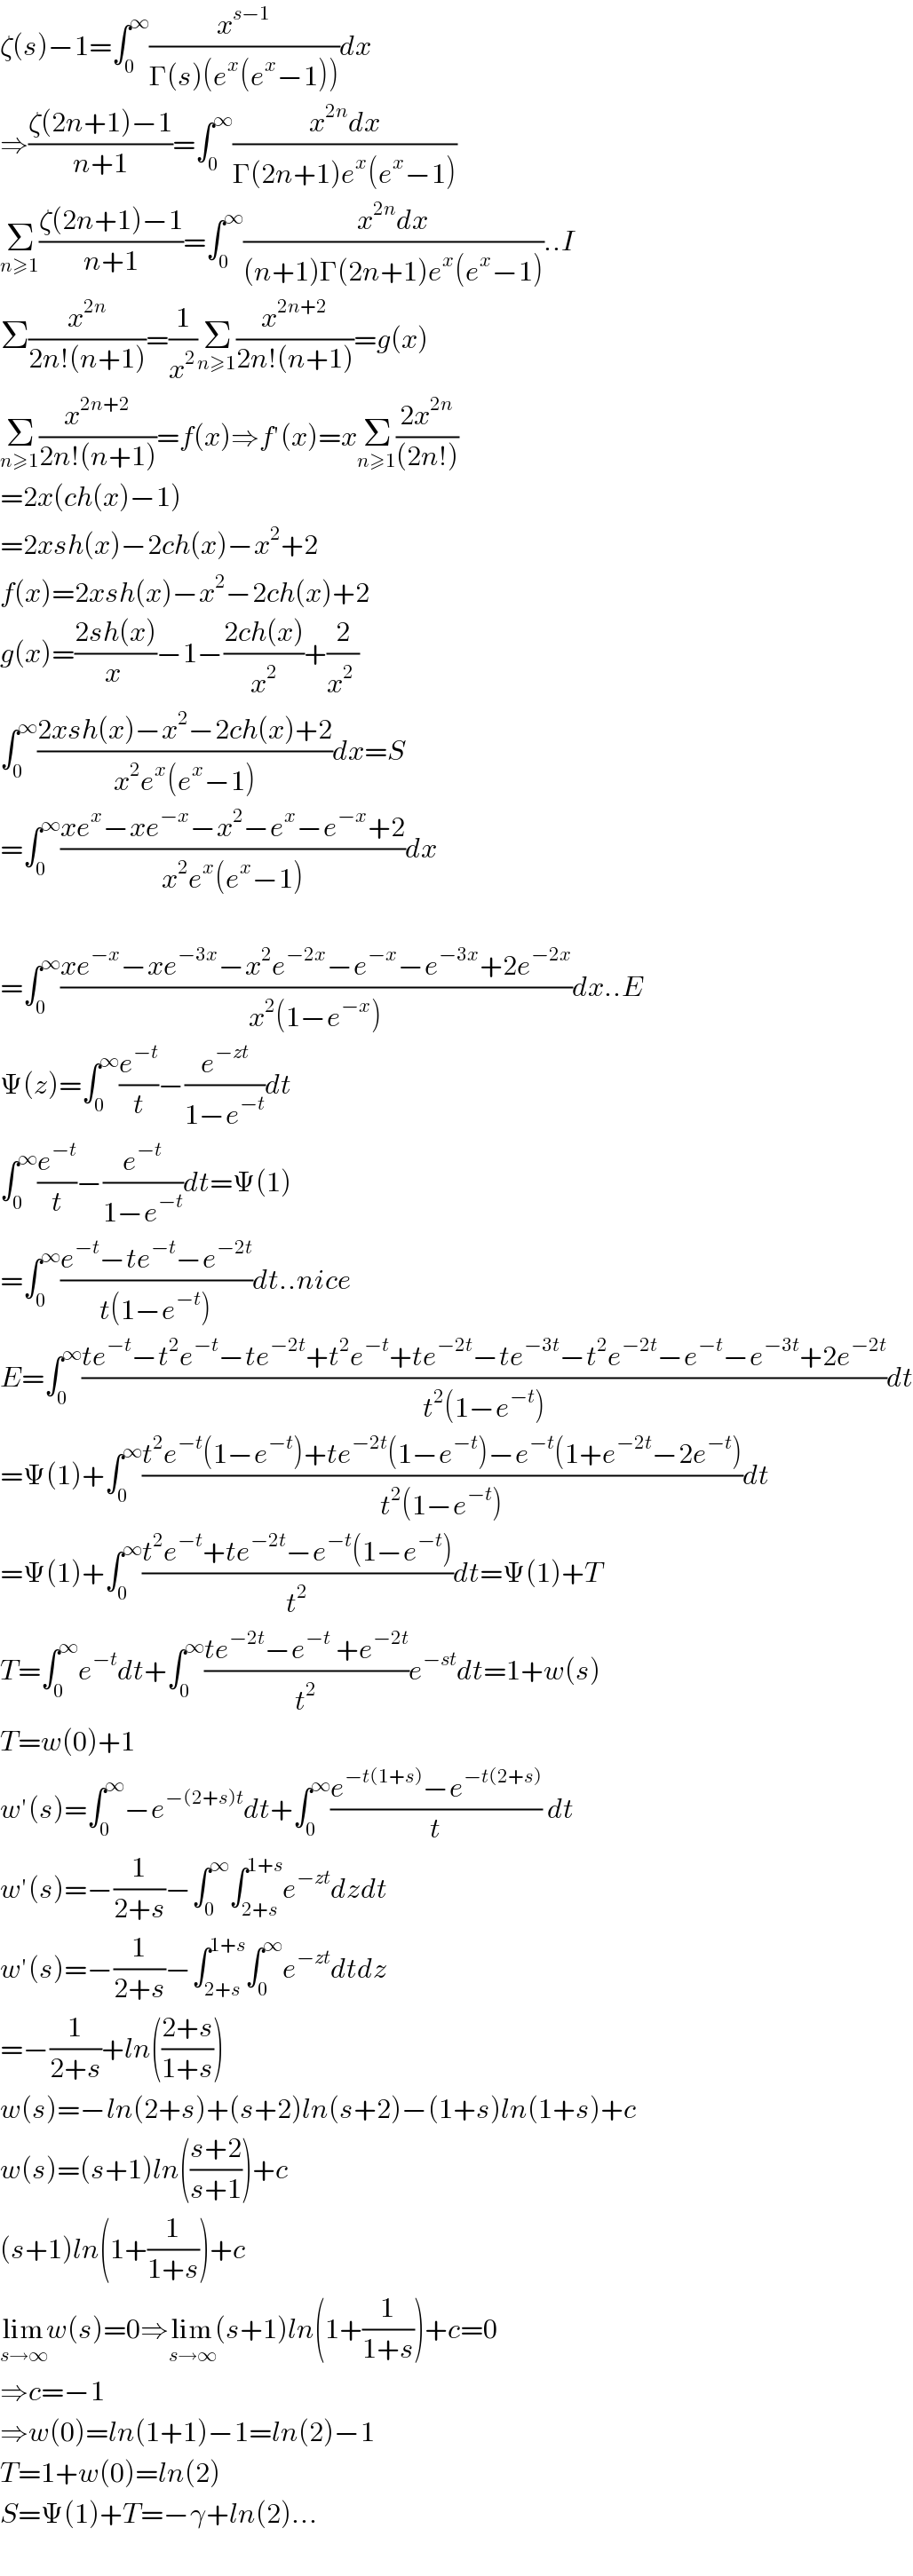 ζ(s)−1=∫_0 ^∞ (x^(s−1) /(Γ(s)(e^x (e^x −1))))dx  ⇒((ζ(2n+1)−1)/(n+1))=∫_0 ^∞ ((x^(2n) dx)/(Γ(2n+1)e^x (e^x −1)))  Σ_(n≥1) ((ζ(2n+1)−1)/(n+1))=∫_0 ^∞ ((x^(2n) dx)/((n+1)Γ(2n+1)e^x (e^x −1)))..I  Σ(x^(2n) /(2n!(n+1)))=(1/x^2 )Σ_(n≥1) (x^(2n+2) /(2n!(n+1)))=g(x)  Σ_(n≥1) (x^(2n+2) /(2n!(n+1)))=f(x)⇒f′(x)=xΣ_(n≥1) ((2x^(2n) )/((2n!)))   =2x(ch(x)−1)  =2xsh(x)−2ch(x)−x^2 +2  f(x)=2xsh(x)−x^2 −2ch(x)+2  g(x)=((2sh(x))/(x ))−1−((2ch(x))/x^2 )+(2/(x^2  ))  ∫_0 ^∞ ((2xsh(x)−x^2 −2ch(x)+2)/(x^2 e^x (e^x −1)))dx=S  =∫_0 ^∞ ((xe^x −xe^(−x) −x^2 −e^x −e^(−x) +2)/(x^2 e^x (e^x −1)))dx    =∫_0 ^∞ ((xe^(−x) −xe^(−3x) −x^2 e^(−2x) −e^(−x) −e^(−3x) +2e^(−2x) )/(x^2 (1−e^(−x) )))dx..E  Ψ(z)=∫_0 ^∞ (e^(−t) /t)−(e^(−zt) /(1−e^(−t) ))dt  ∫_0 ^∞ (e^(−t) /t)−(e^(−t) /(1−e^(−t) ))dt=Ψ(1)  =∫_0 ^∞ ((e^(−t) −te^(−t) −e^(−2t) )/(t(1−e^(−t) )))dt..nice  E=∫_0 ^∞ ((te^(−t) −t^2 e^(−t) −te^(−2t) +t^2 e^(−t) +te^(−2t) −te^(−3t) −t^2 e^(−2t) −e^(−t) −e^(−3t) +2e^(−2t) )/(t^2 (1−e^(−t) )))dt  =Ψ(1)+∫_0 ^∞ ((t^2 e^(−t) (1−e^(−t) )+te^(−2t) (1−e^(−t) )−e^(−t) (1+e^(−2t) −2e^(−t) ))/(t^2 (1−e^(−t) )))dt  =Ψ(1)+∫_0 ^∞ ((t^2 e^(−t) +te^(−2t) −e^(−t) (1−e^(−t) ))/t^2 )dt=Ψ(1)+T  T=∫_0 ^∞ e^(−t) dt+∫_0 ^∞ ((te^(−2t) −e^(−t)  +e^(−2t) )/t^2 )e^(−st) dt=1+w(s)  T=w(0)+1  w′(s)=∫_0 ^∞ −e^(−(2+s)t) dt+∫_0 ^∞ ((e^(−t(1+s)) −e^(−t(2+s)) )/t) dt  w′(s)=−(1/(2+s))−∫_0 ^∞ ∫_(2+s) ^(1+s) e^(−zt) dzdt  w′(s)=−(1/(2+s))−∫_(2+s) ^(1+s) ∫_0 ^∞ e^(−zt) dtdz  =−(1/(2+s))+ln(((2+s)/(1+s)))  w(s)=−ln(2+s)+(s+2)ln(s+2)−(1+s)ln(1+s)+c  w(s)=(s+1)ln(((s+2)/(s+1)))+c  (s+1)ln(1+(1/(1+s)))+c  lim_(s→∞) w(s)=0⇒lim_(s→∞) (s+1)ln(1+(1/(1+s)))+c=0  ⇒c=−1  ⇒w(0)=ln(1+1)−1=ln(2)−1  T=1+w(0)=ln(2)  S=Ψ(1)+T=−γ+ln(2)...    